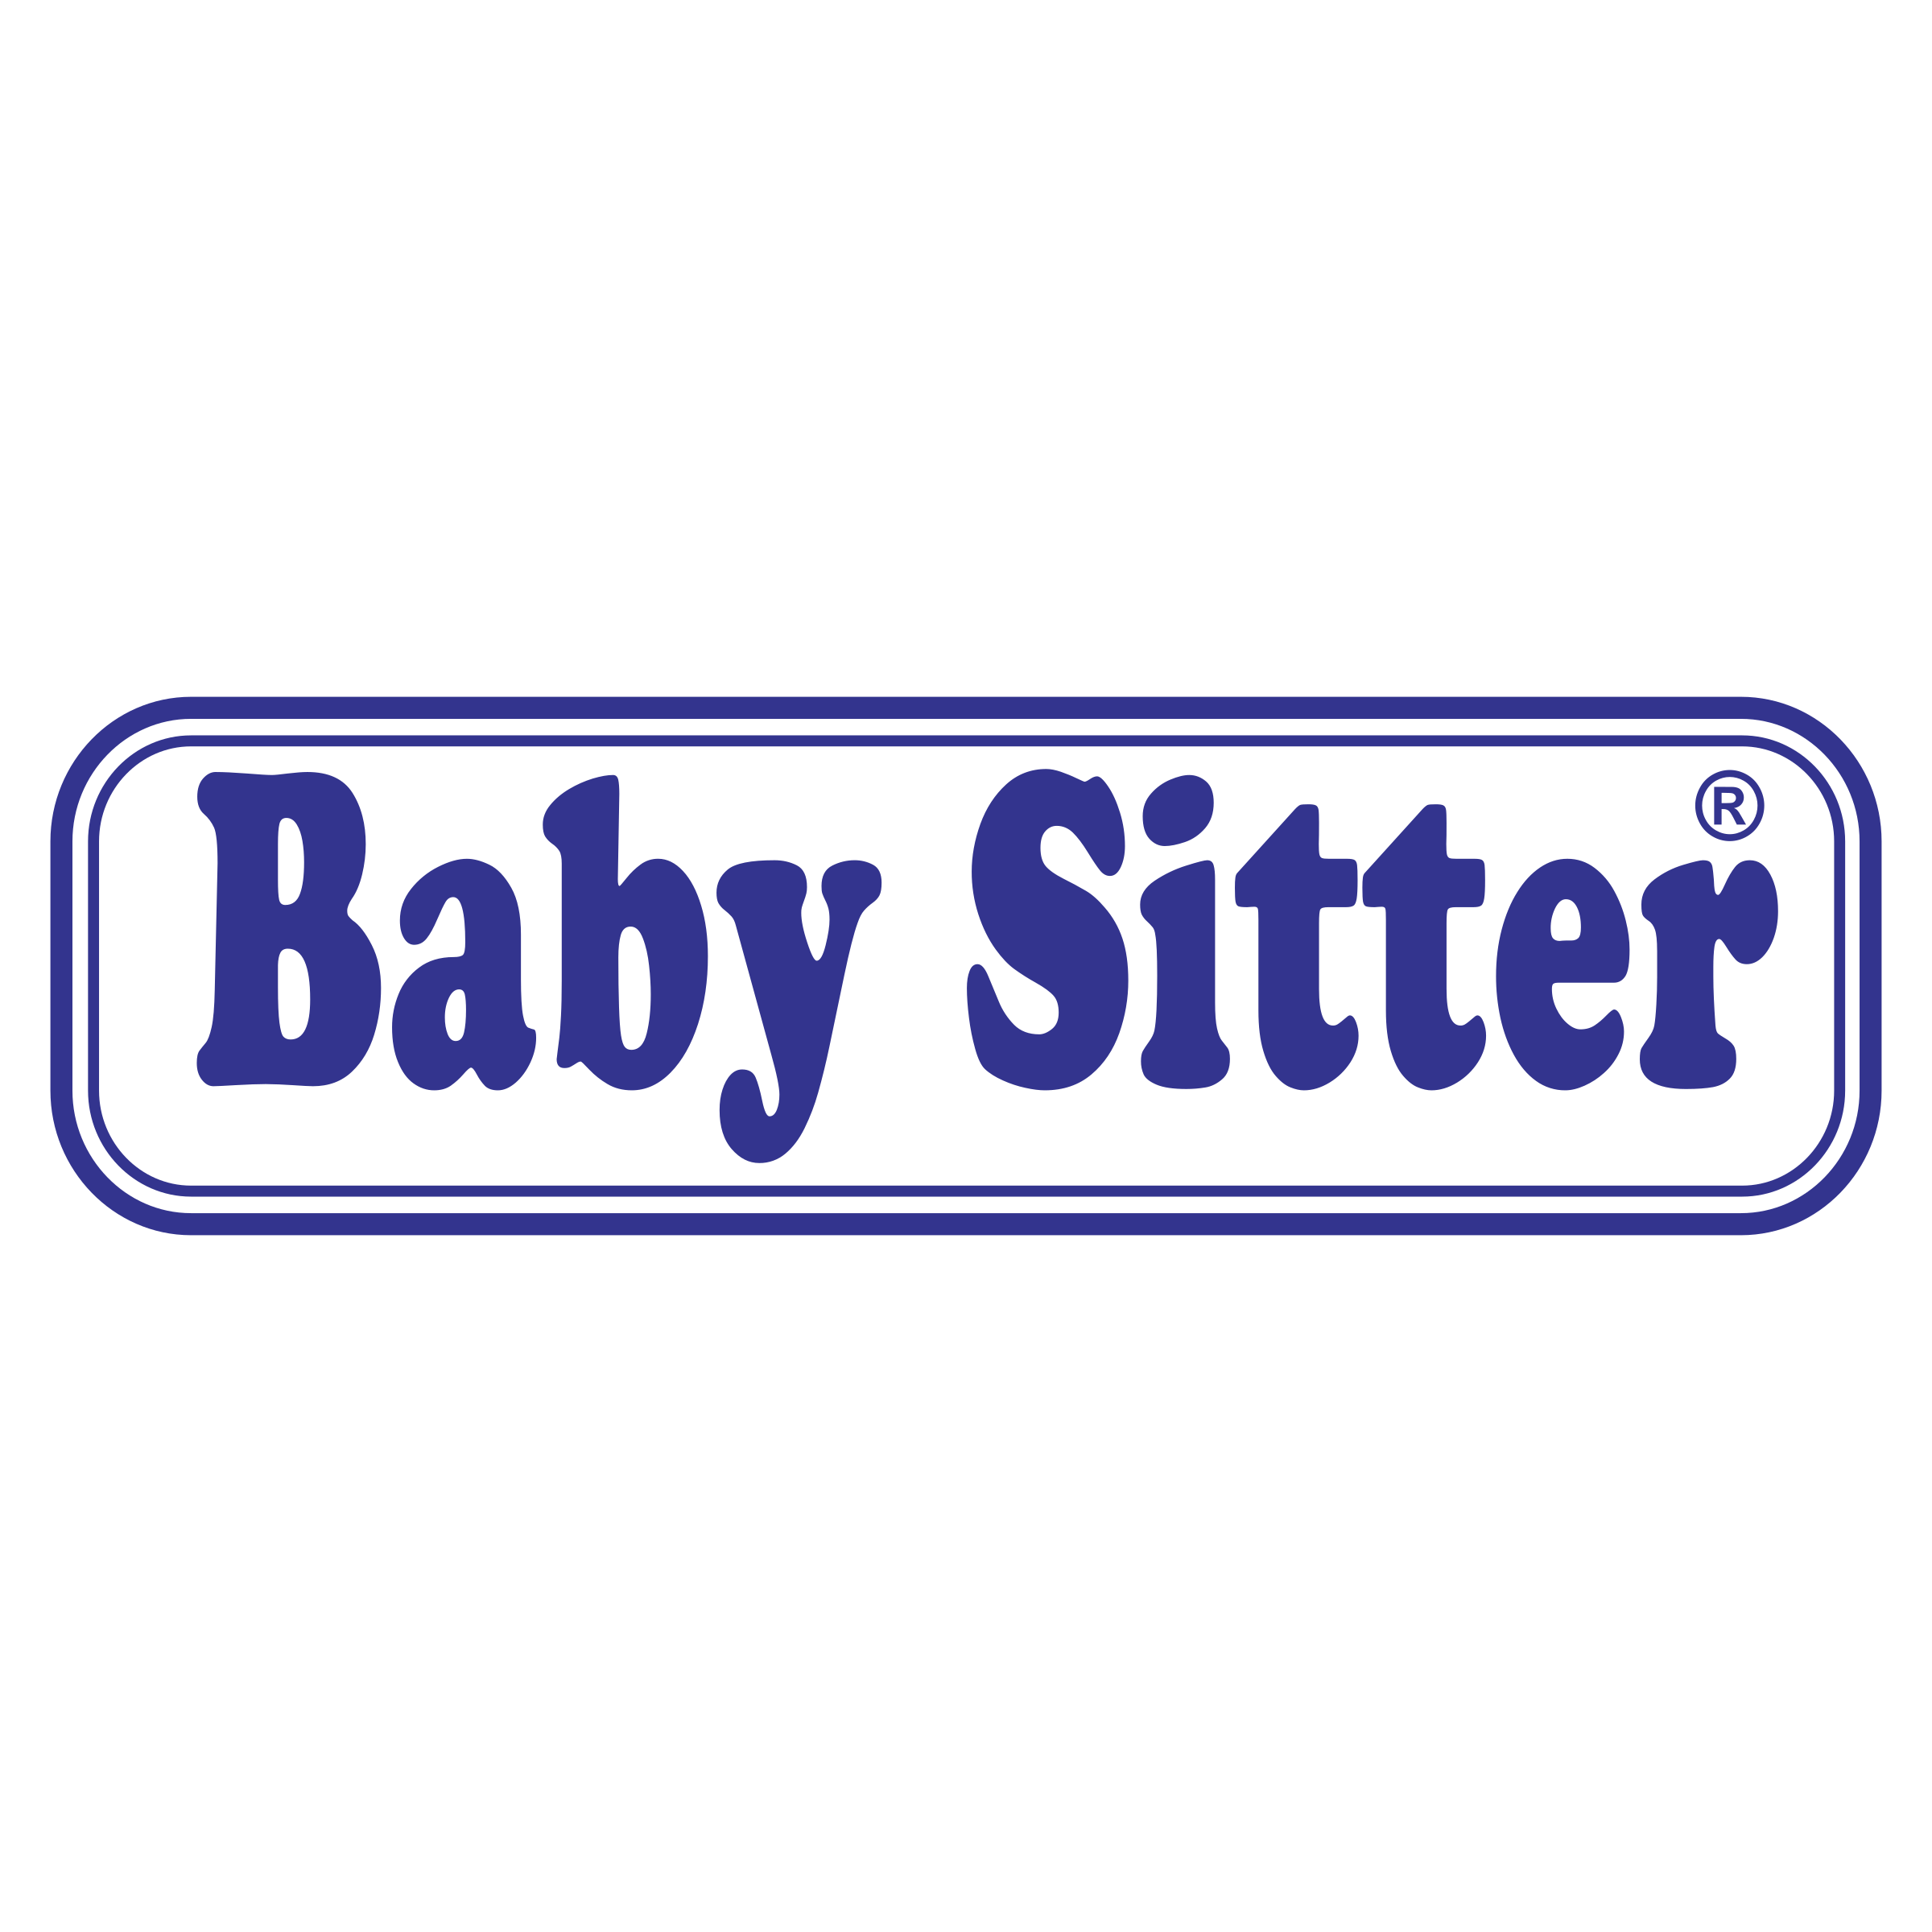 Sitter Logo - Baby Sitter Logo PNG Transparent & SVG Vector